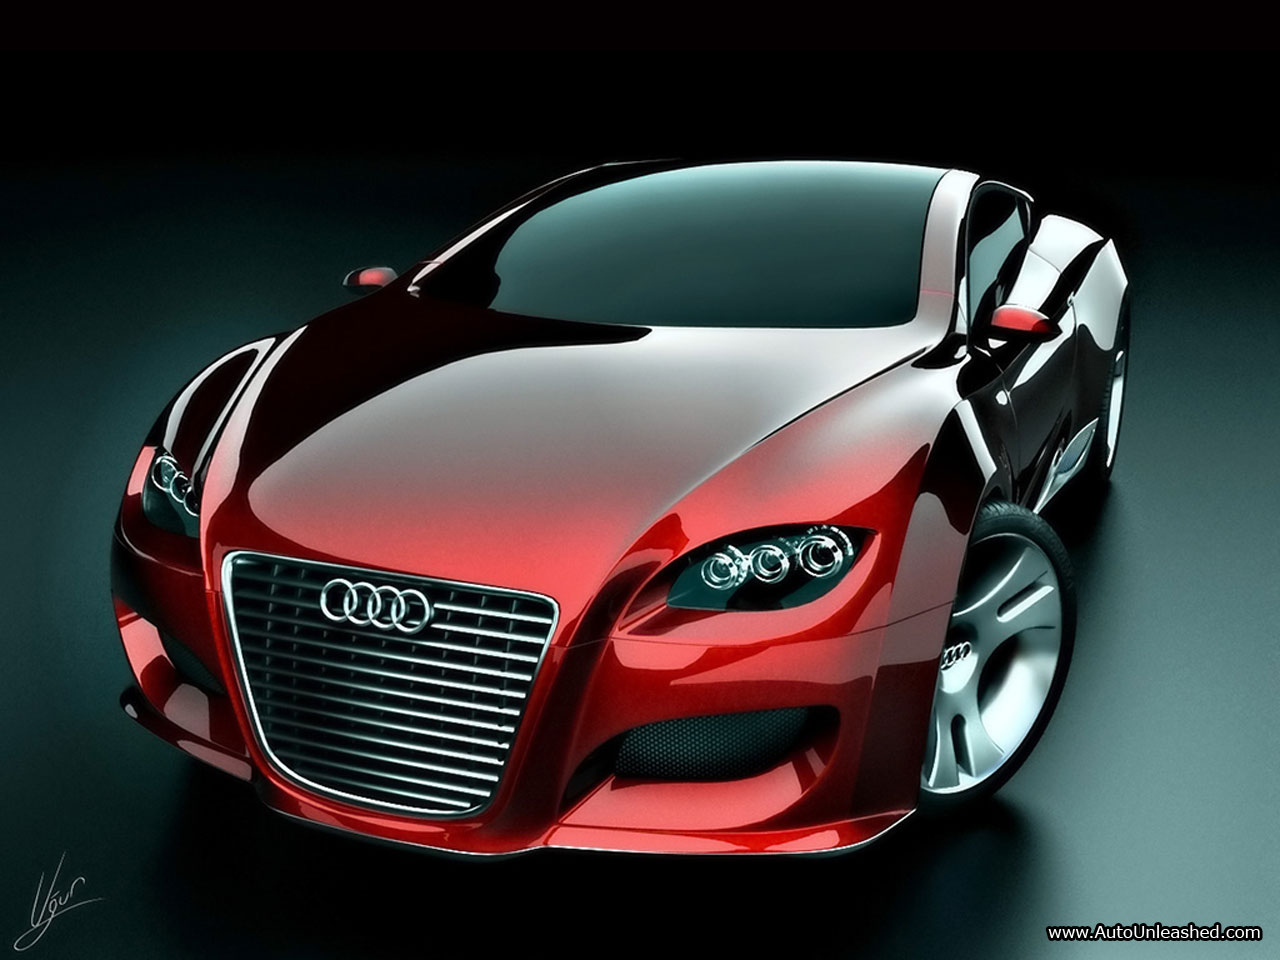 autowallpapers: AUDI Locus Concept Car For Future